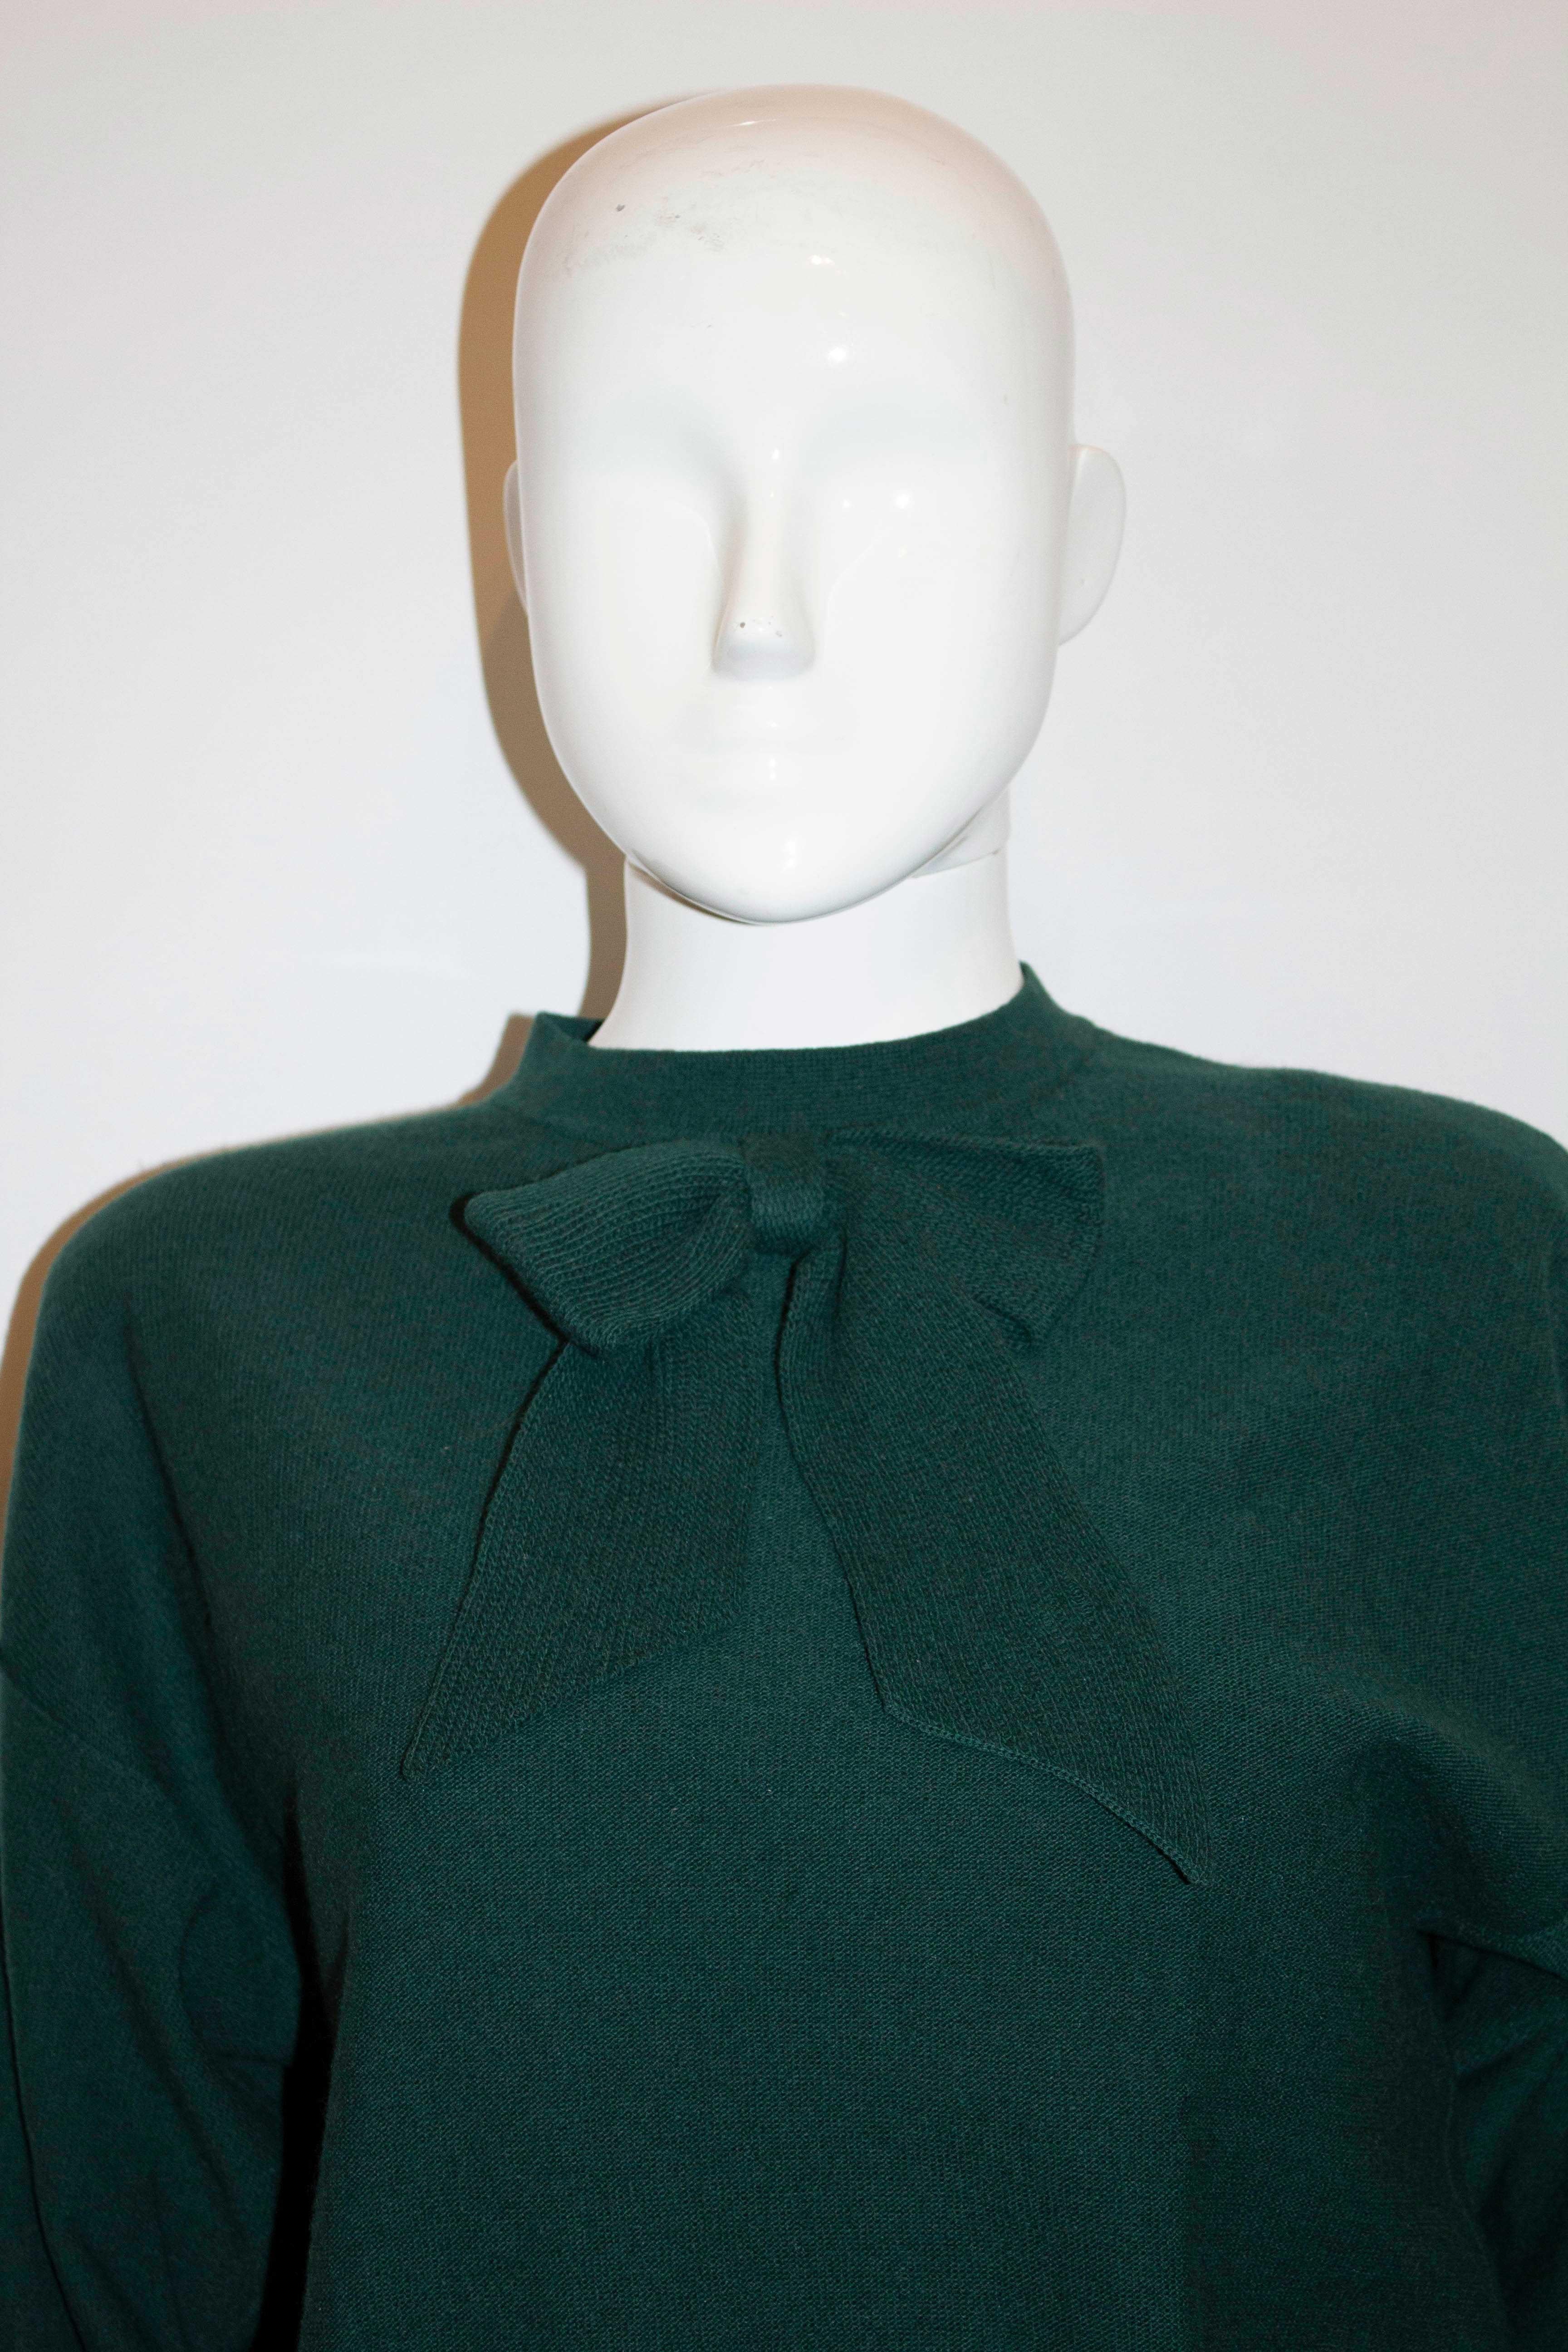 Superbe pull-over vintage en laine verte de Sonia Rykiel mainline. Le pull est d'un magnifique vert sapin de Noël, avec une ouverture à boutons-pression dans le dos et un nœud décoratif tricoté sur le devant. Il présente de larges bords-côtes à